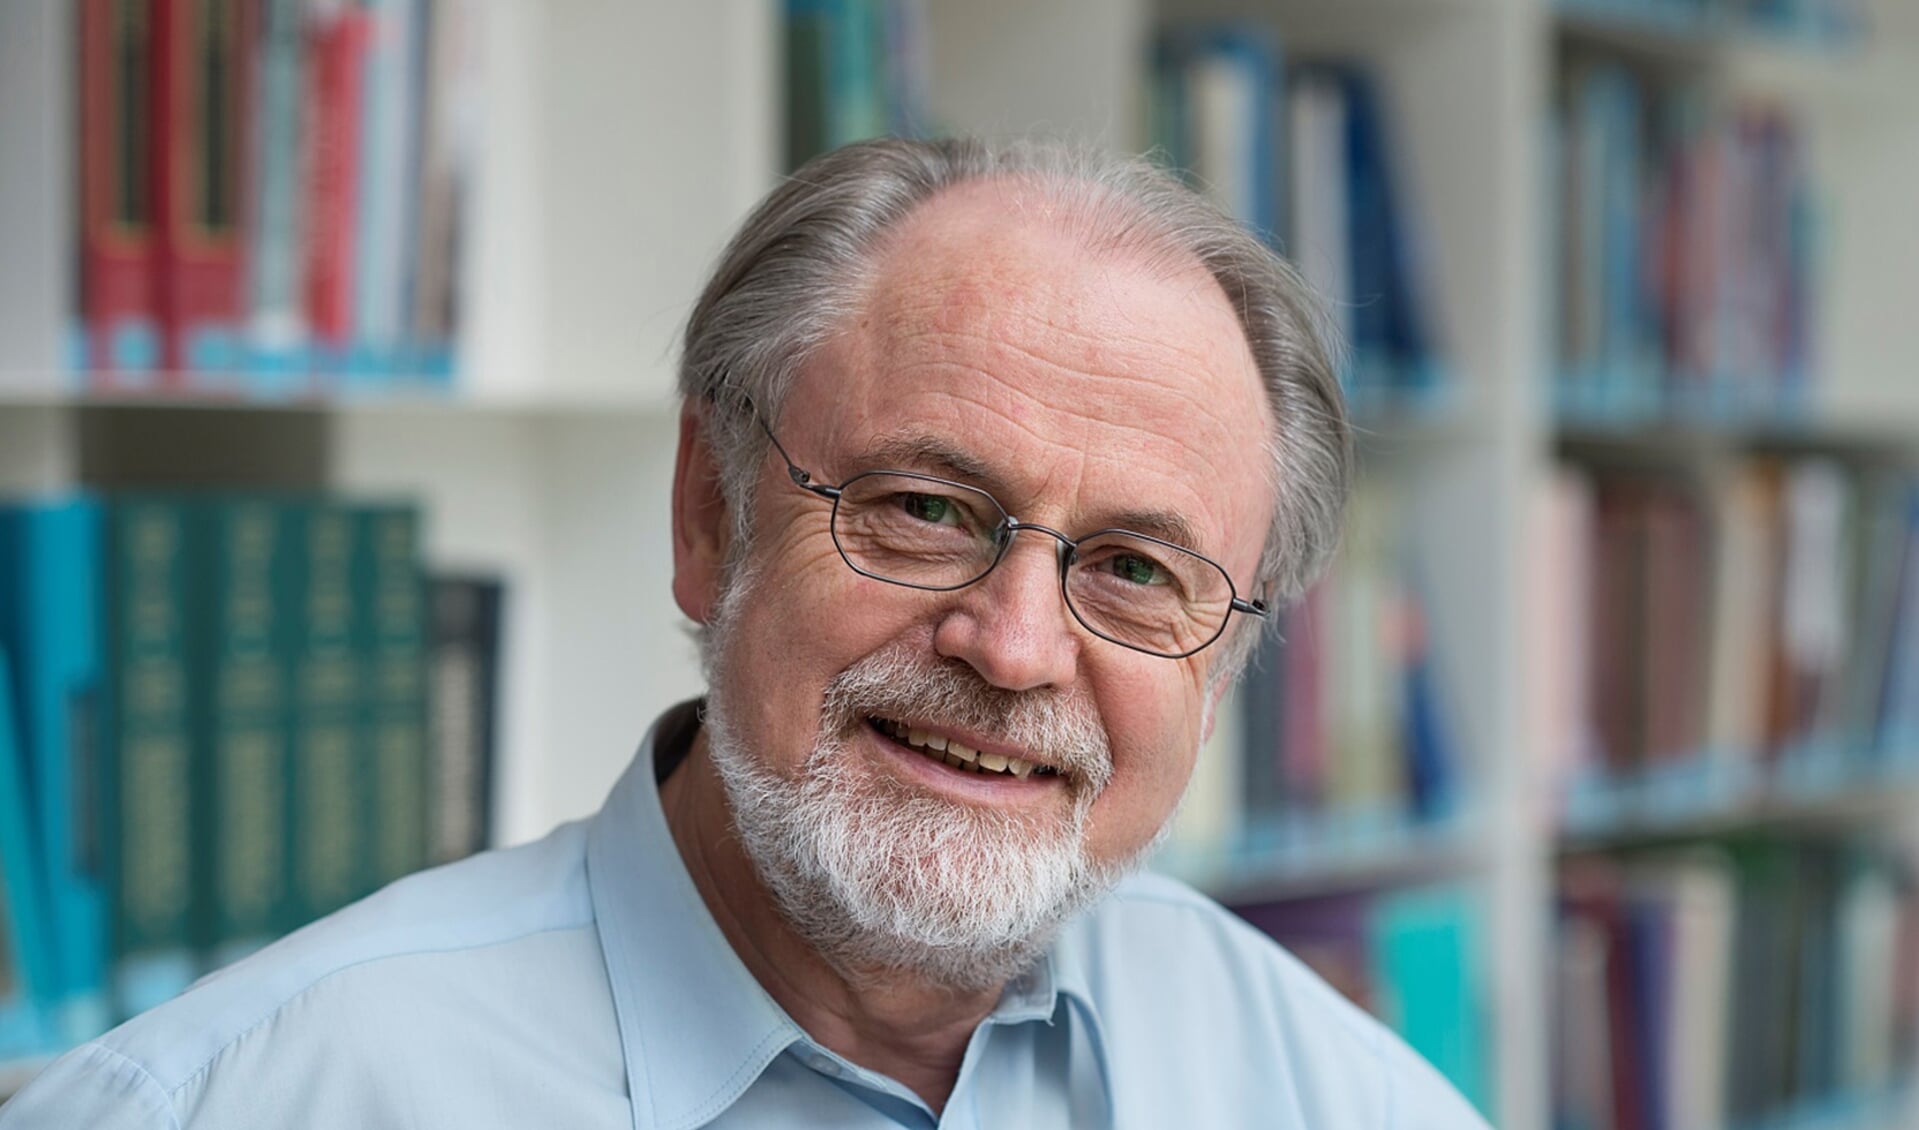 Spreker is professor dr. Jan Hoeijmakers en de titel is Waardoor verouderen wij en hoe worden we gezond oud? 